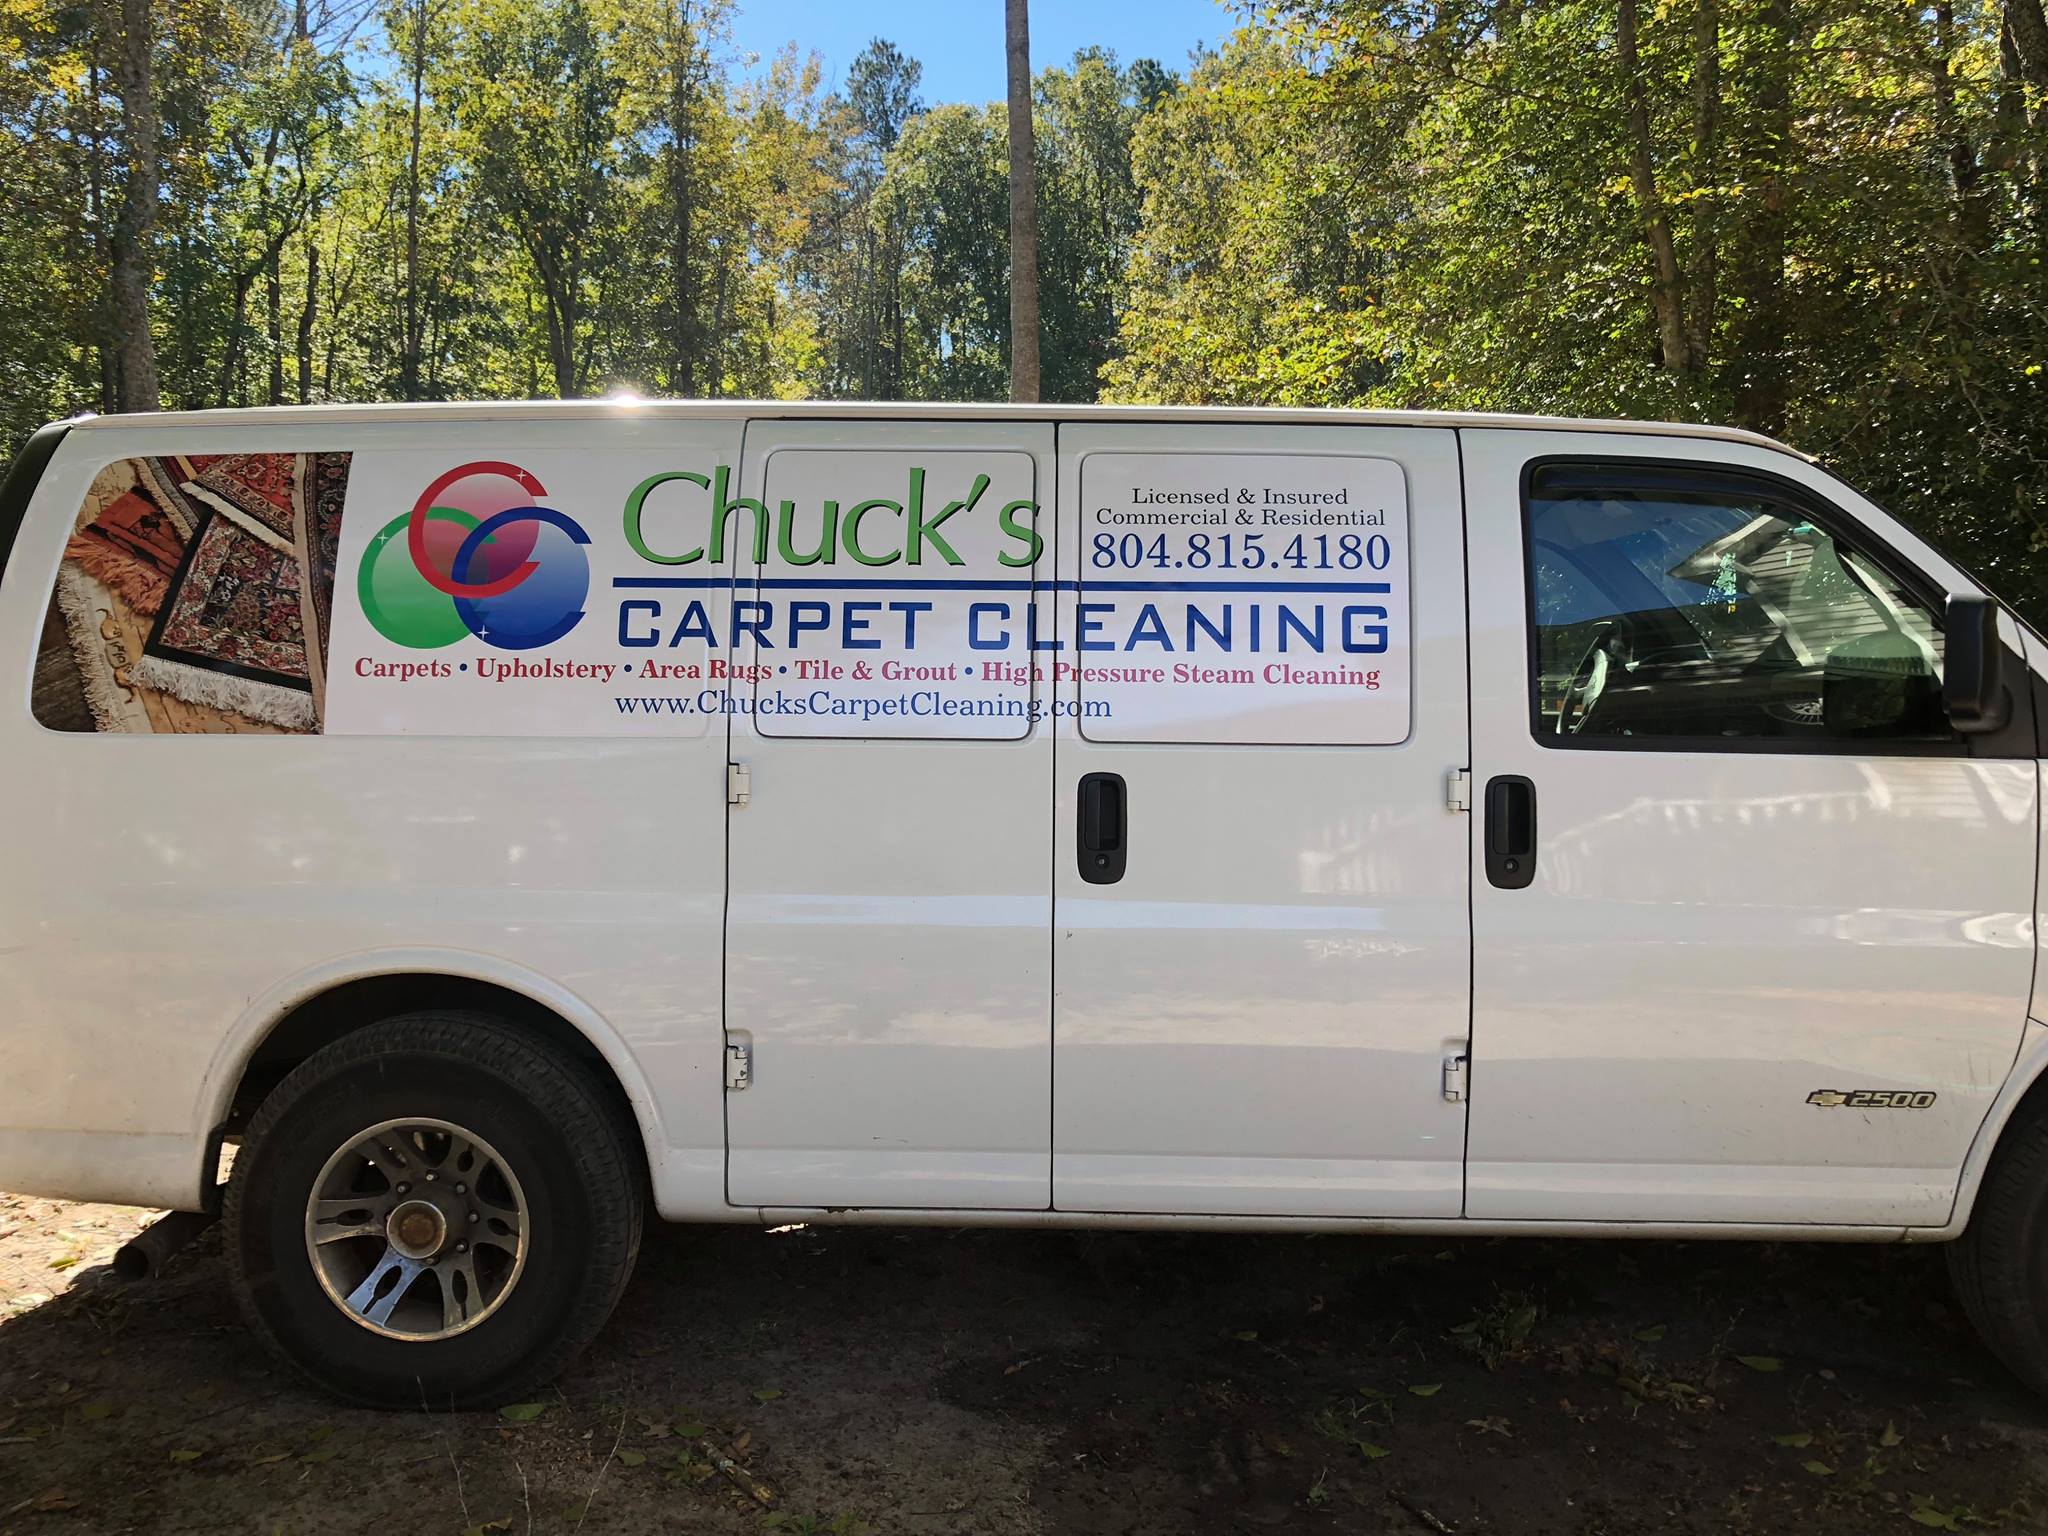 Chucks Carpet Cleaning 12550 Belleview Rd, Gloucester Virginia 23061